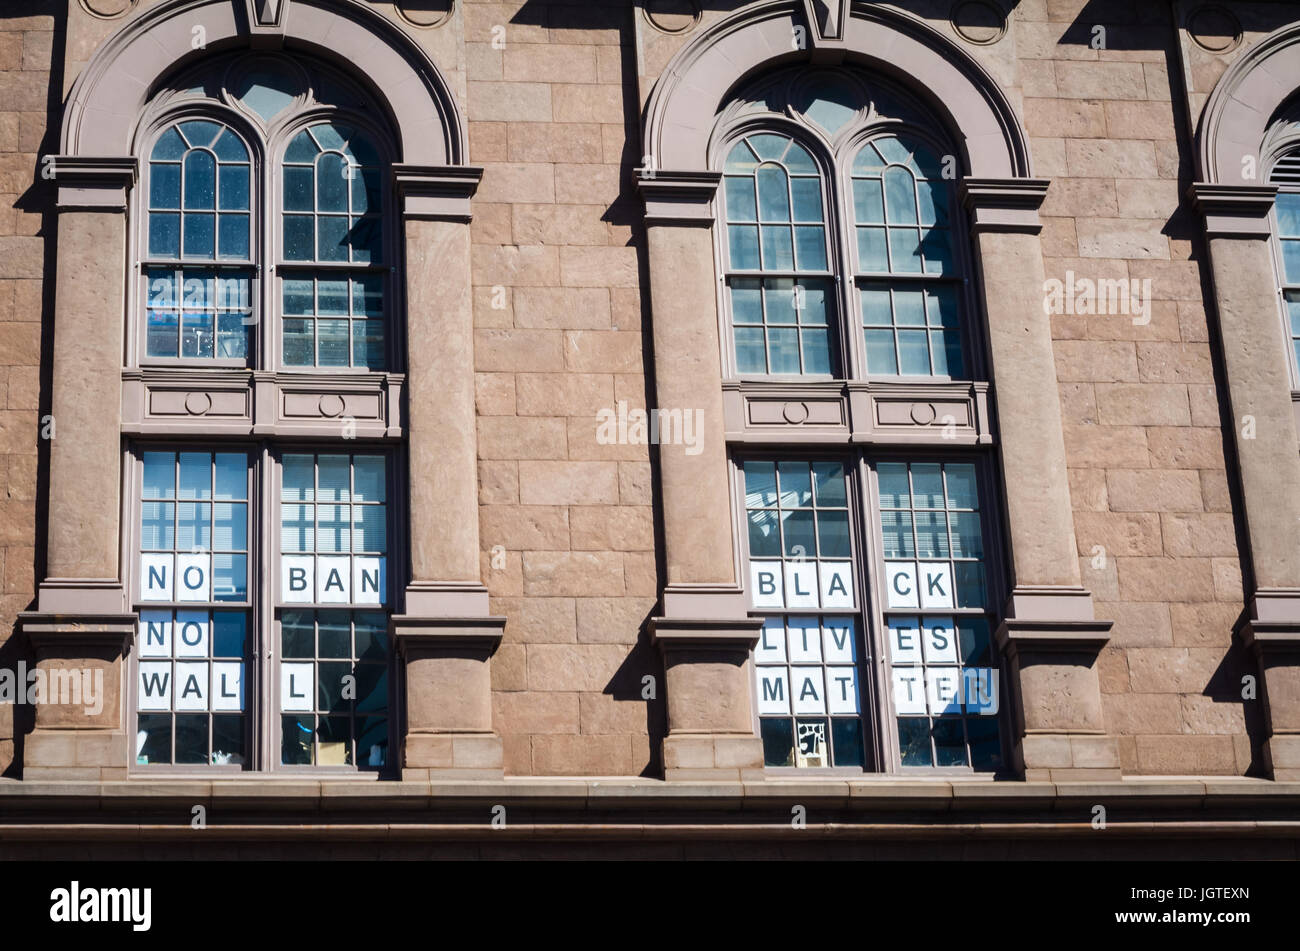 Politischer Protest Zeichen in einem Gebäude in New York City-Fenster, die "Black lebt Materie", "Kein Verbot" und "No Wall", USA gelesen angezeigt Stockfoto